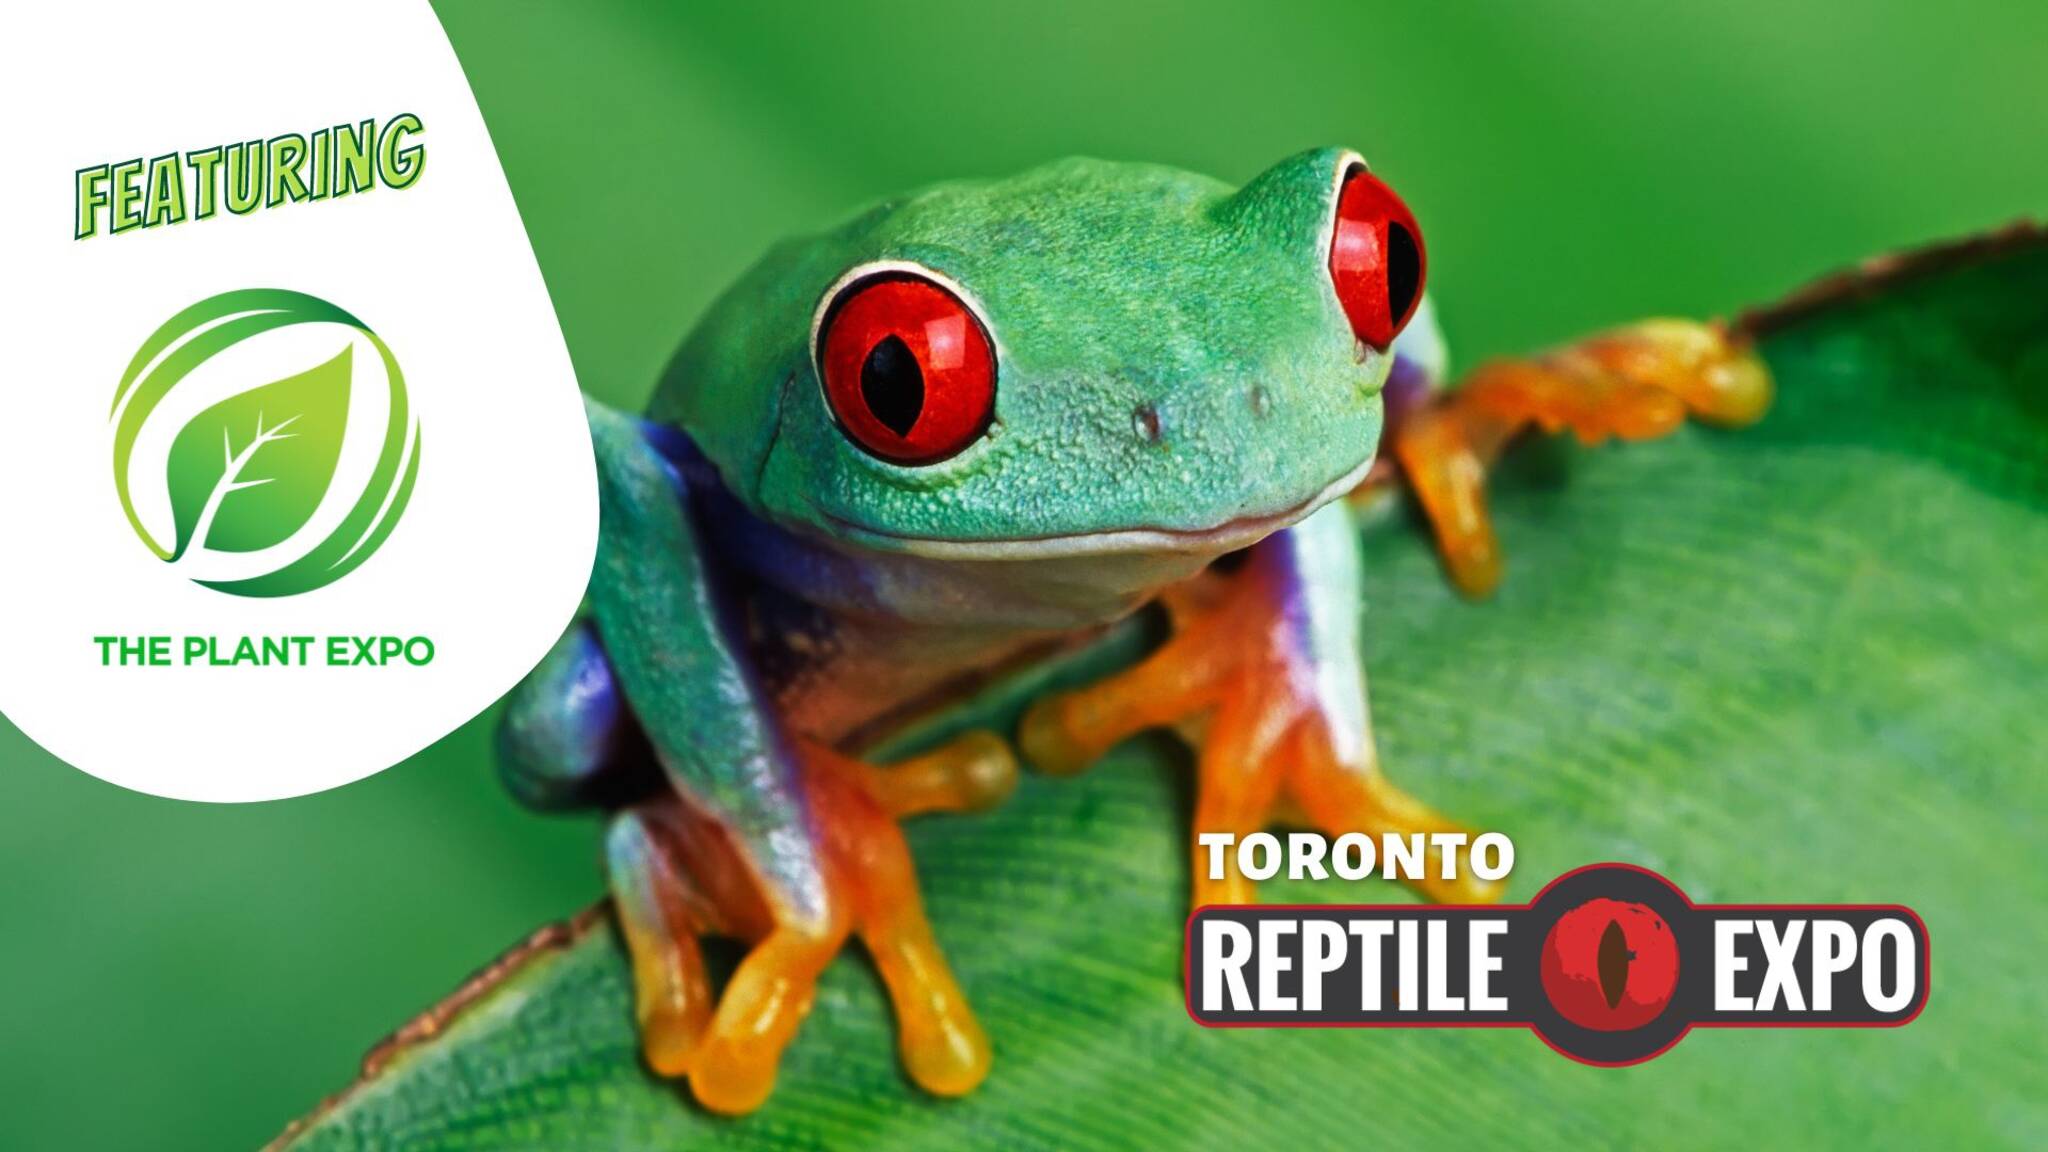 Toronto Reptile Expo